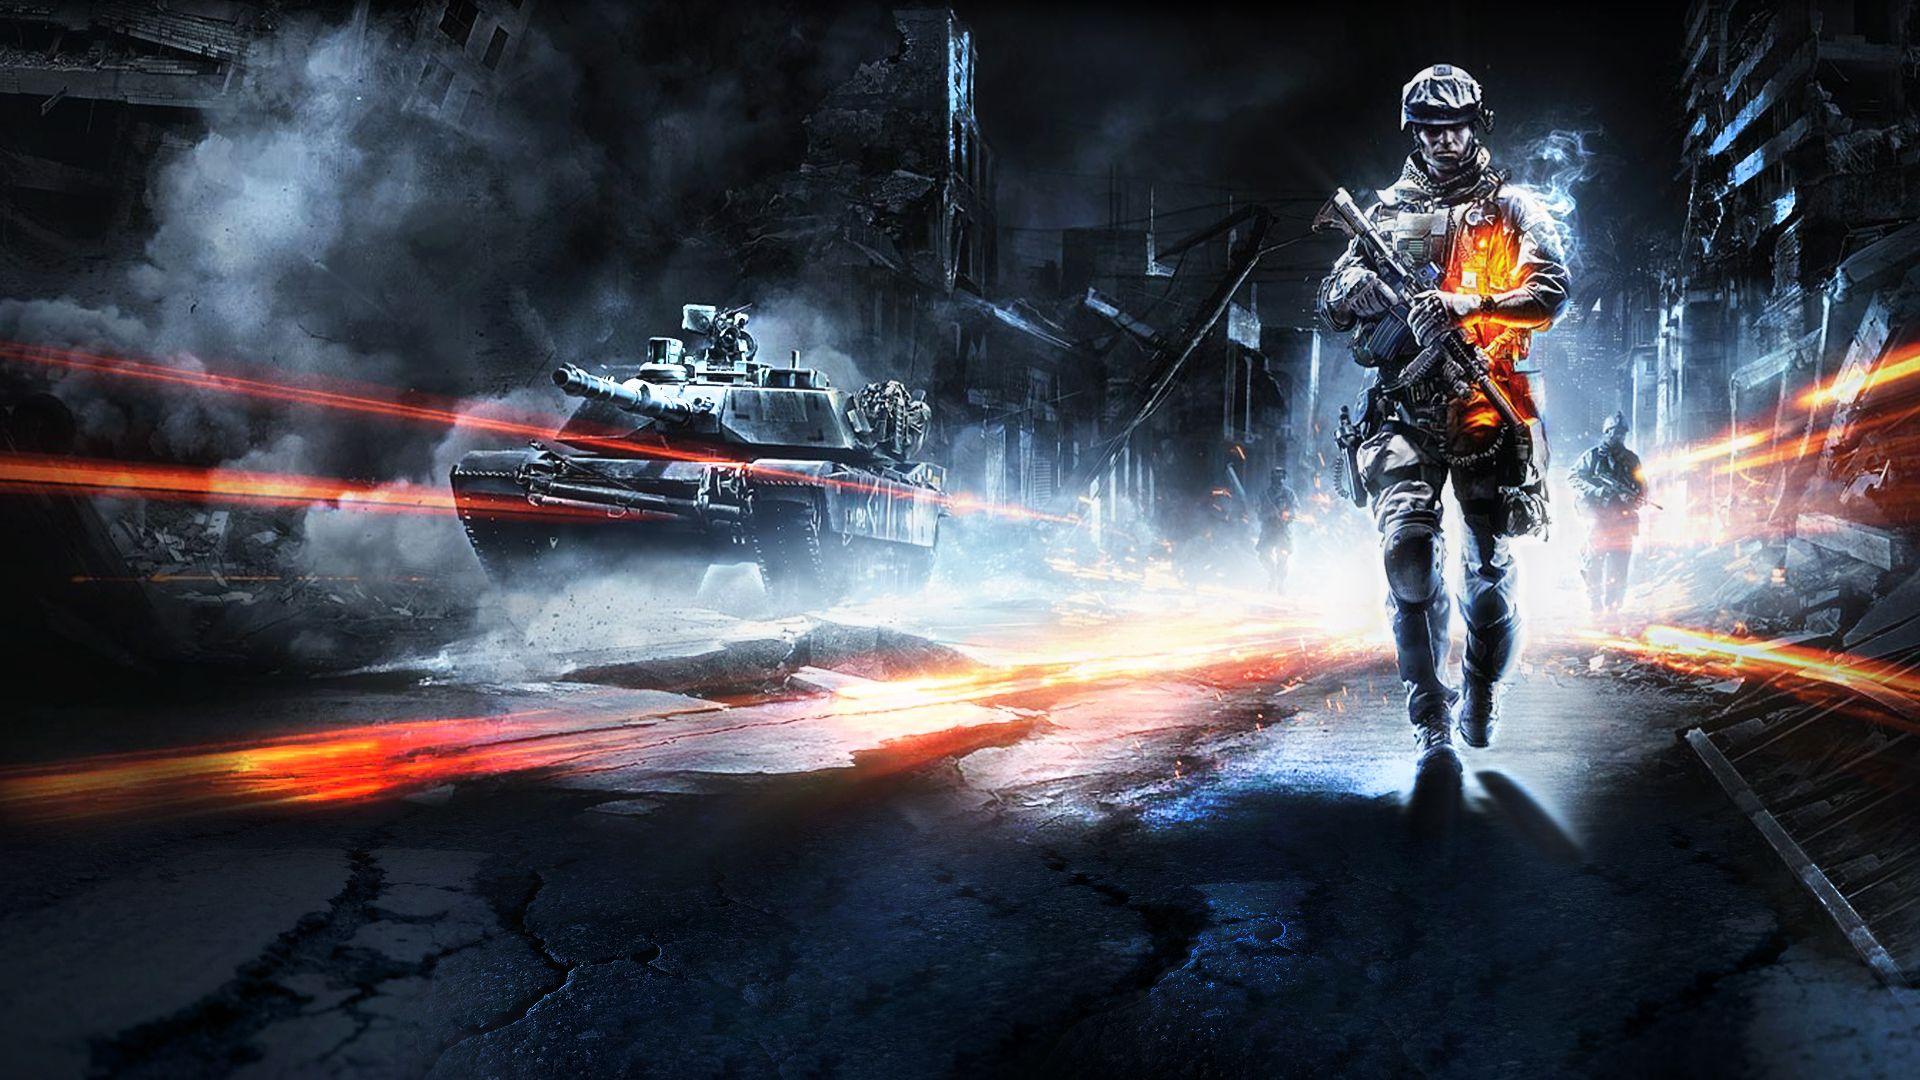 Battlefield 3 Screenshots HD Wallpaper, Background Image